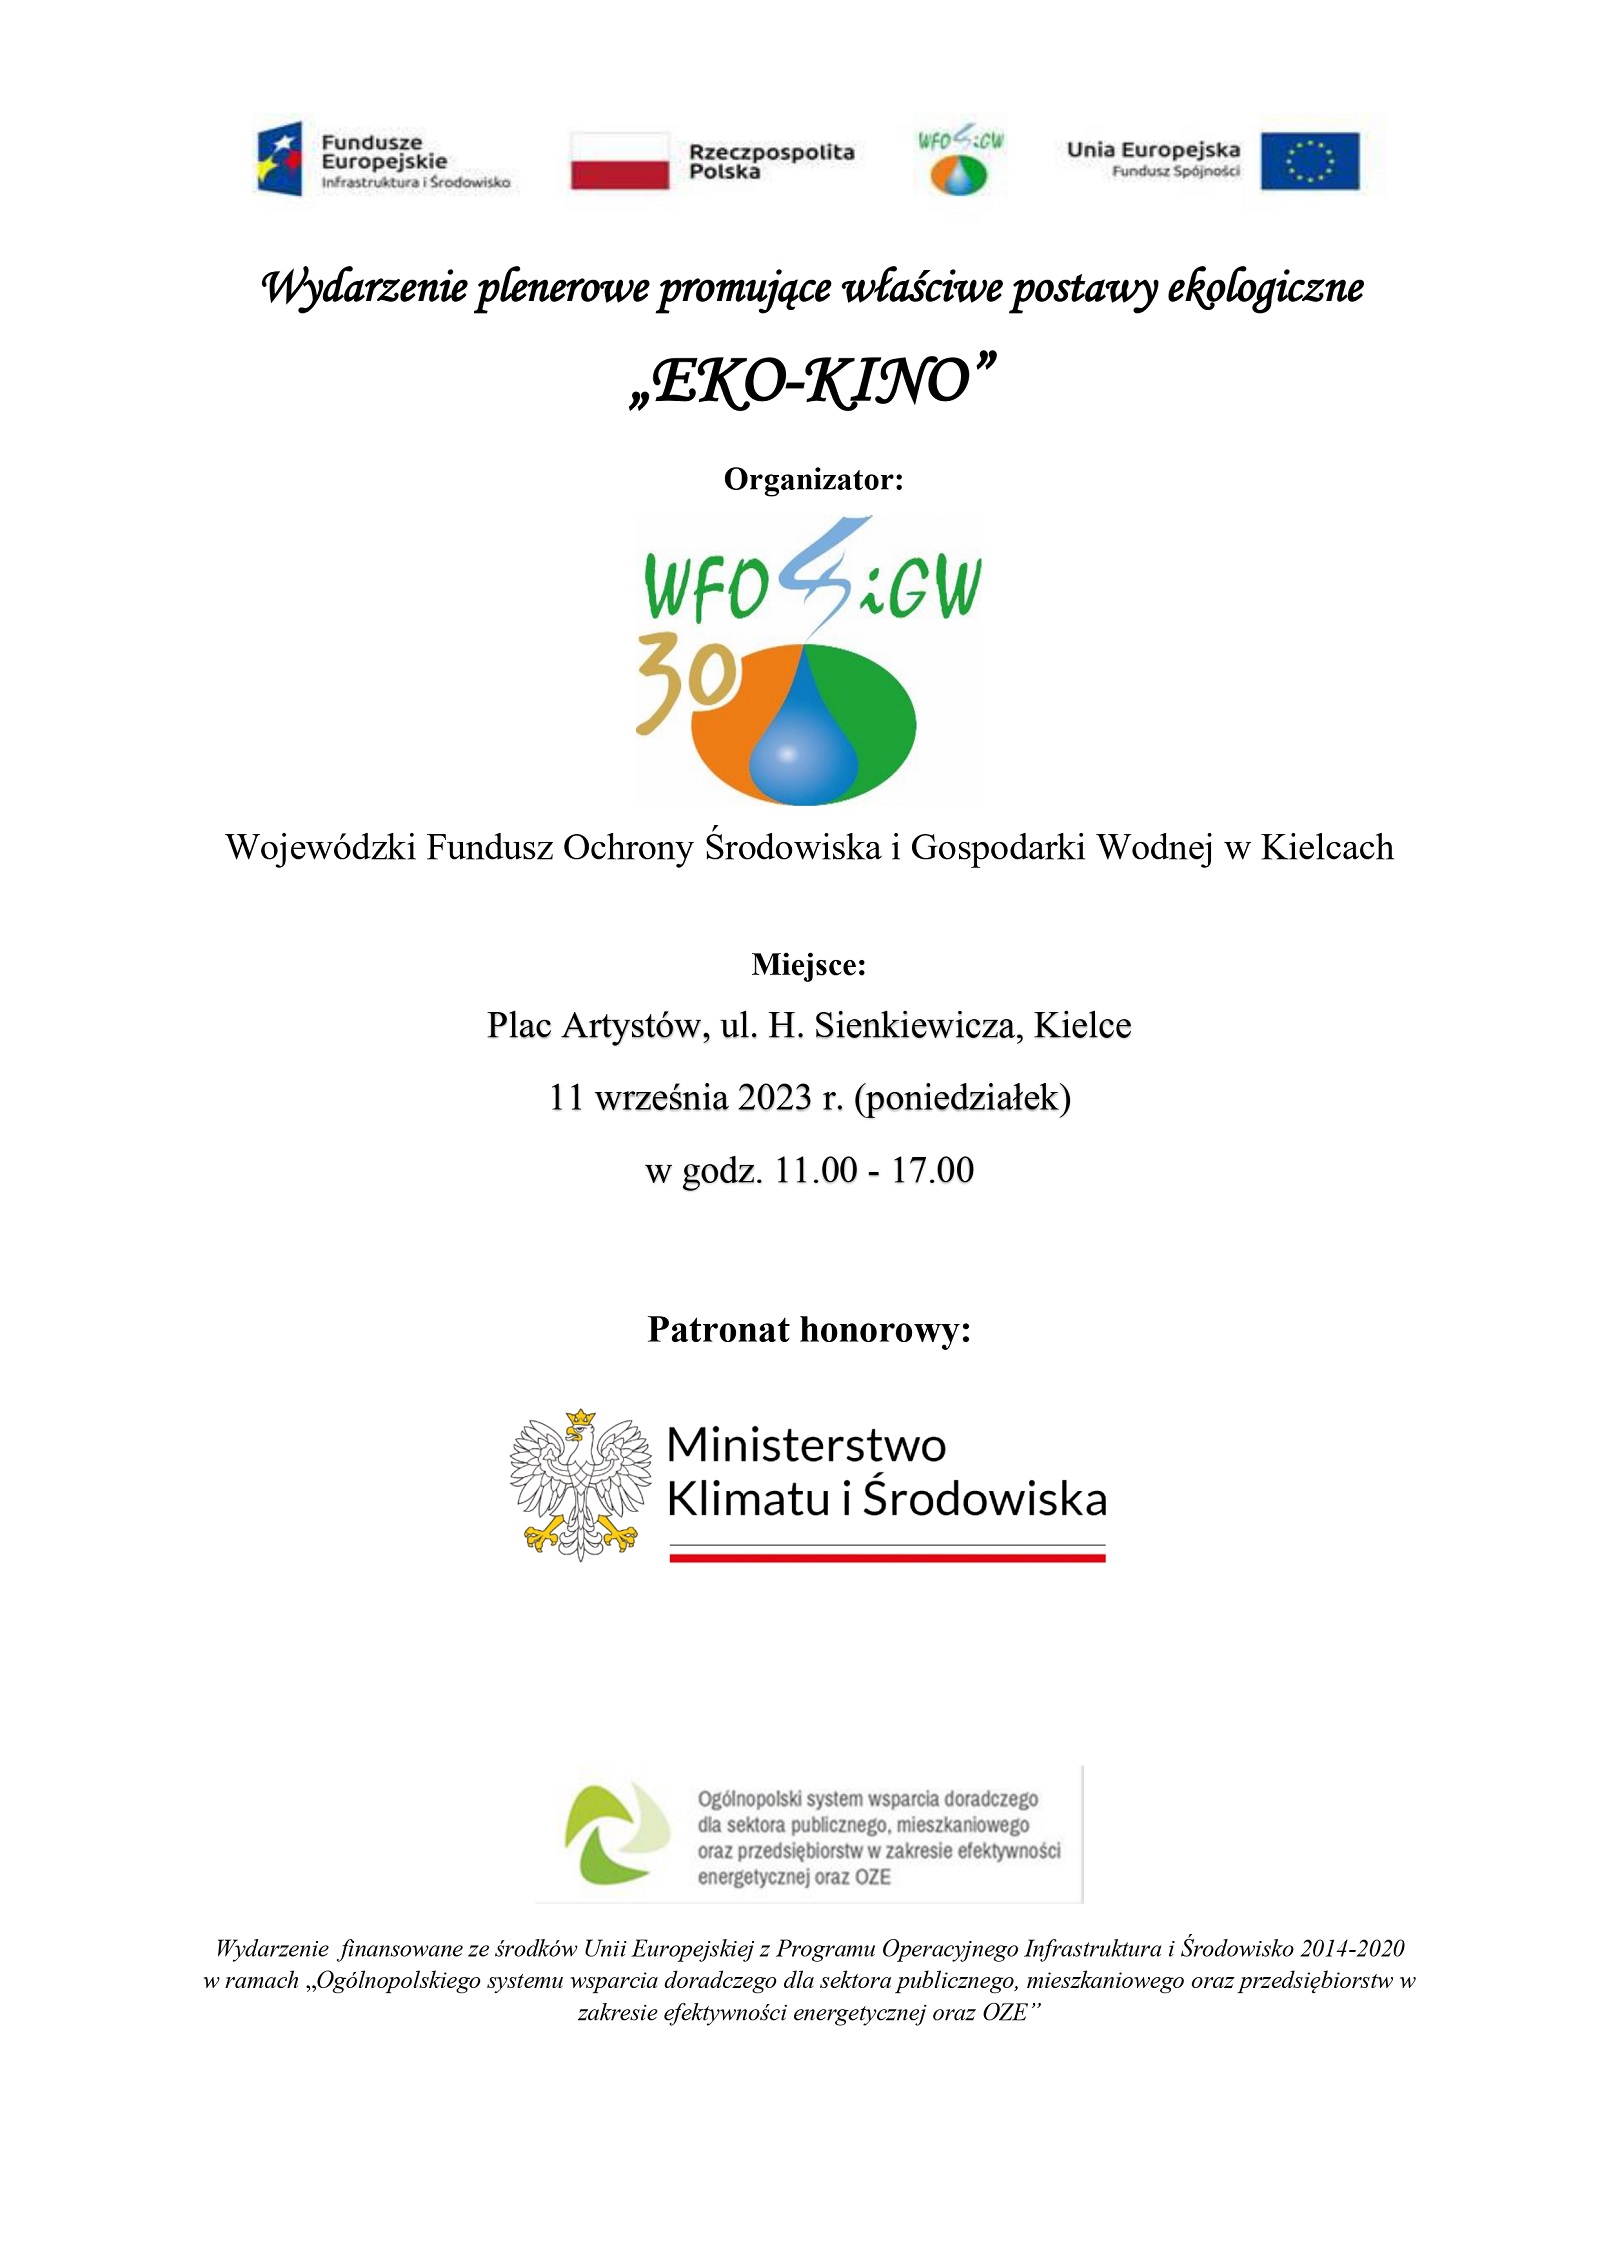 Wydarzenie plenerowe promujące właściwe postawy ekologiczne „EKO-KINO”